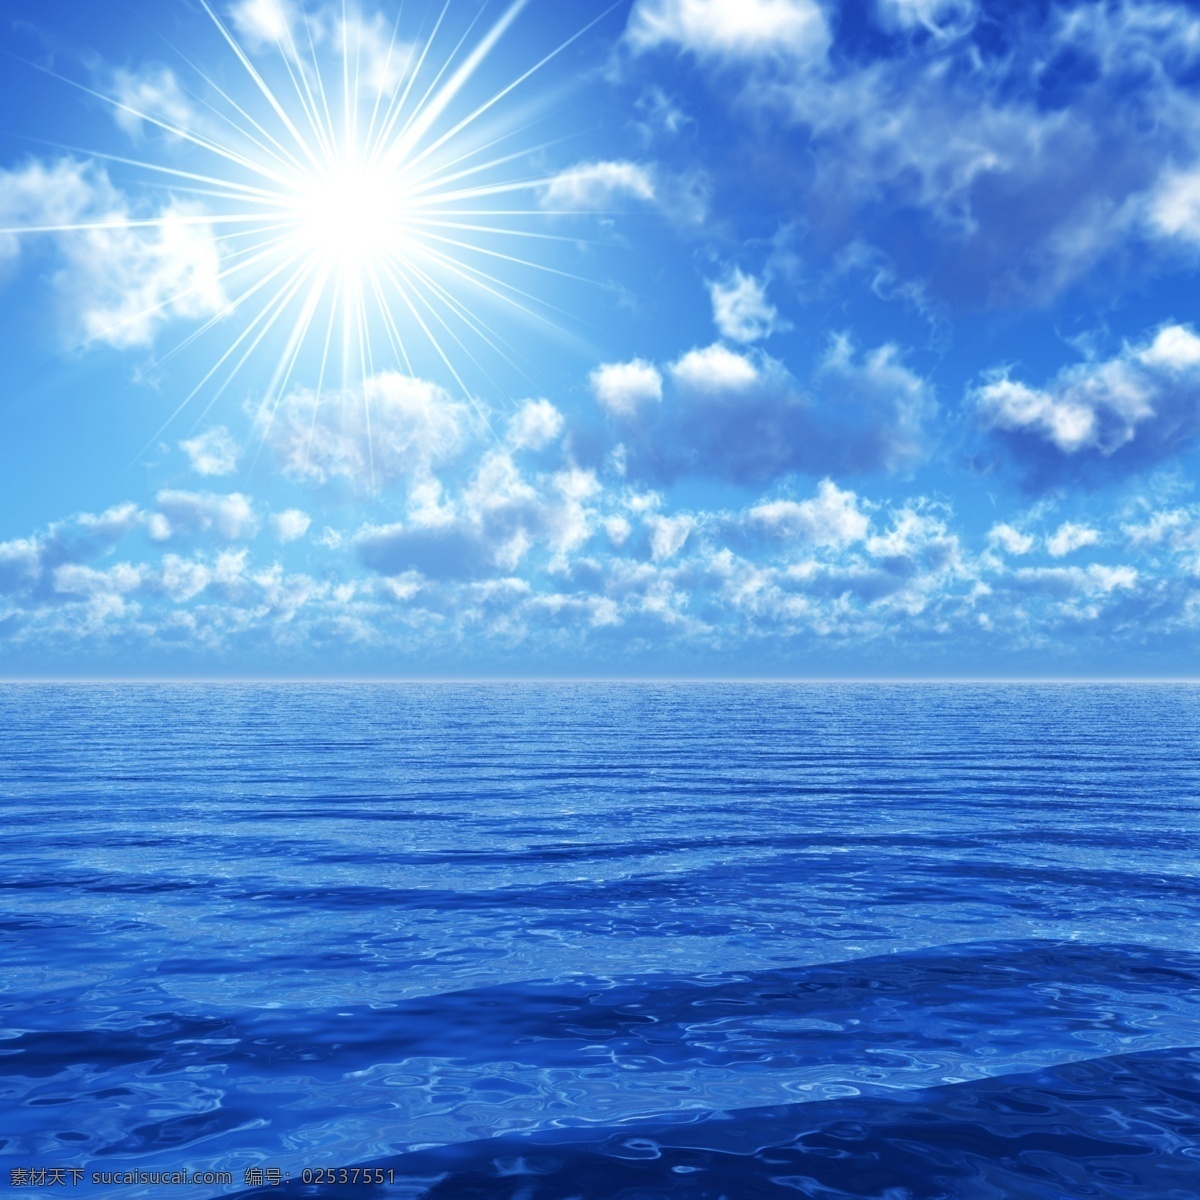 蓝天 大海 风景 海上风景 蔚蓝的海 天空 白云 辽阔 蓝天大海 海洋海边 太阳 阳光 大海图片 风景图片